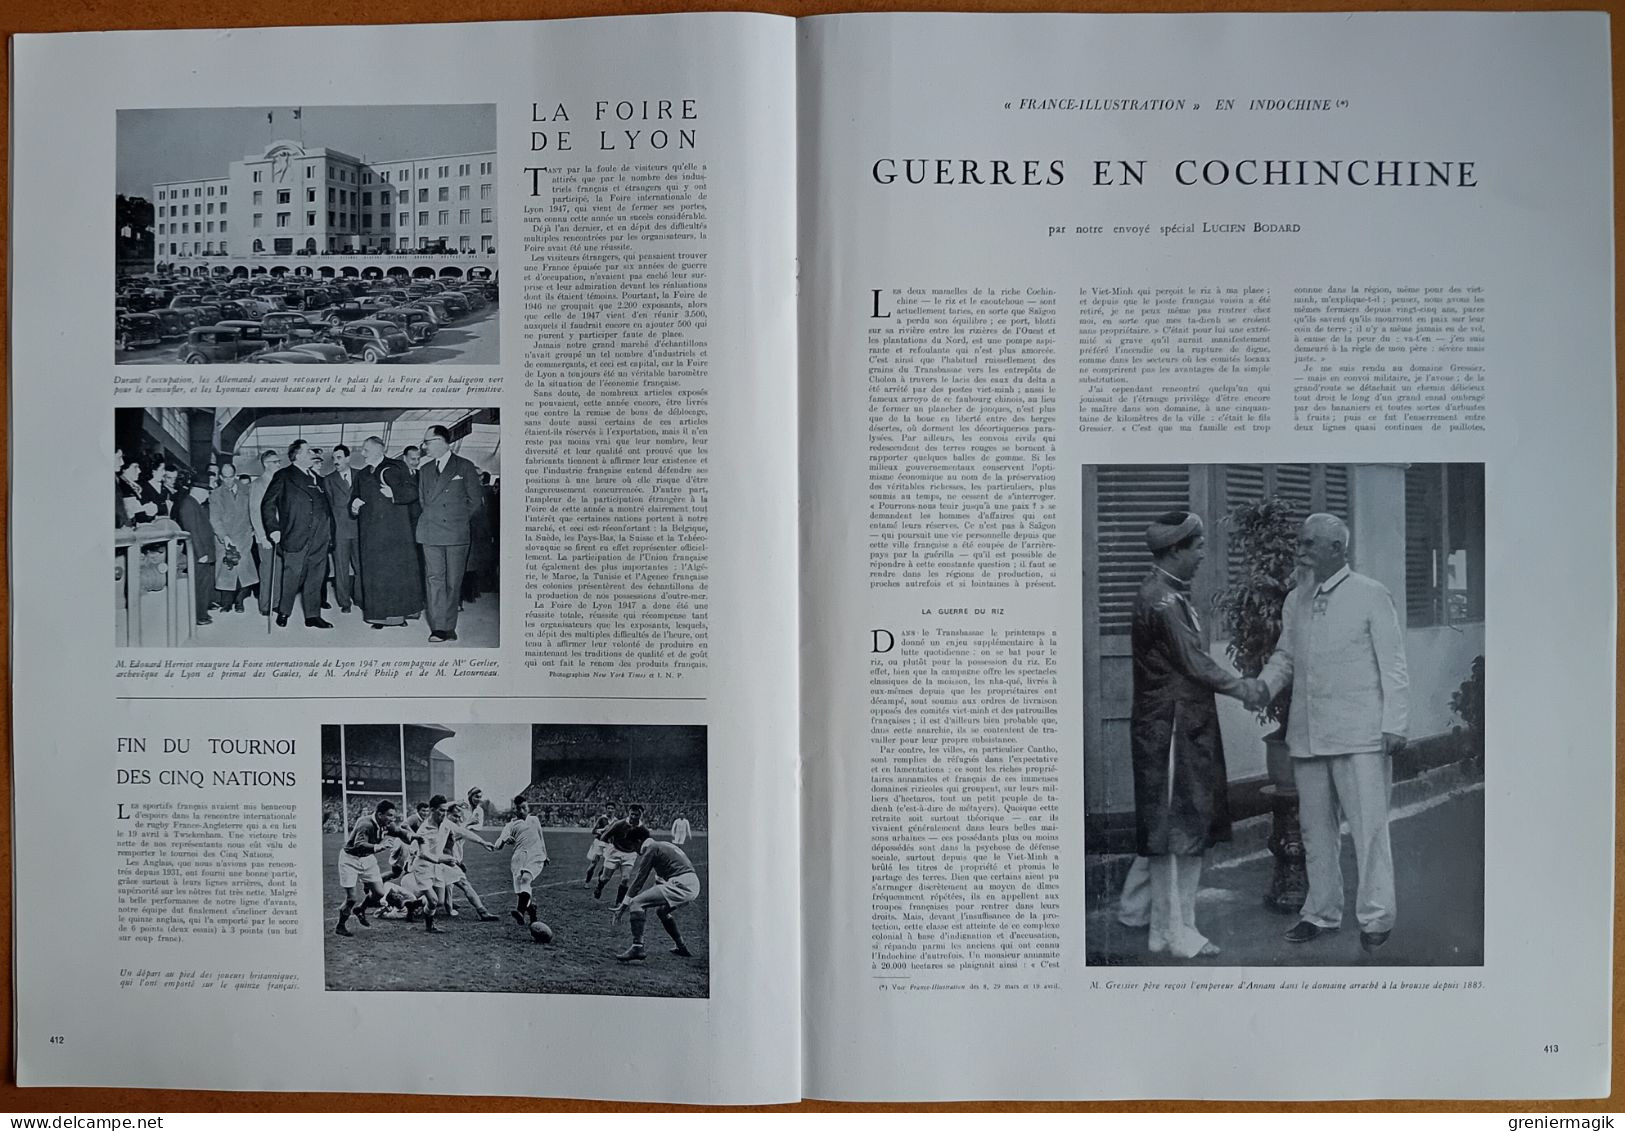 France Illustration N°82 26/04/1947 Port de Texas-City/Discours de Tanger/Indochine/Royal Tour/Maîtres espagnols Londres